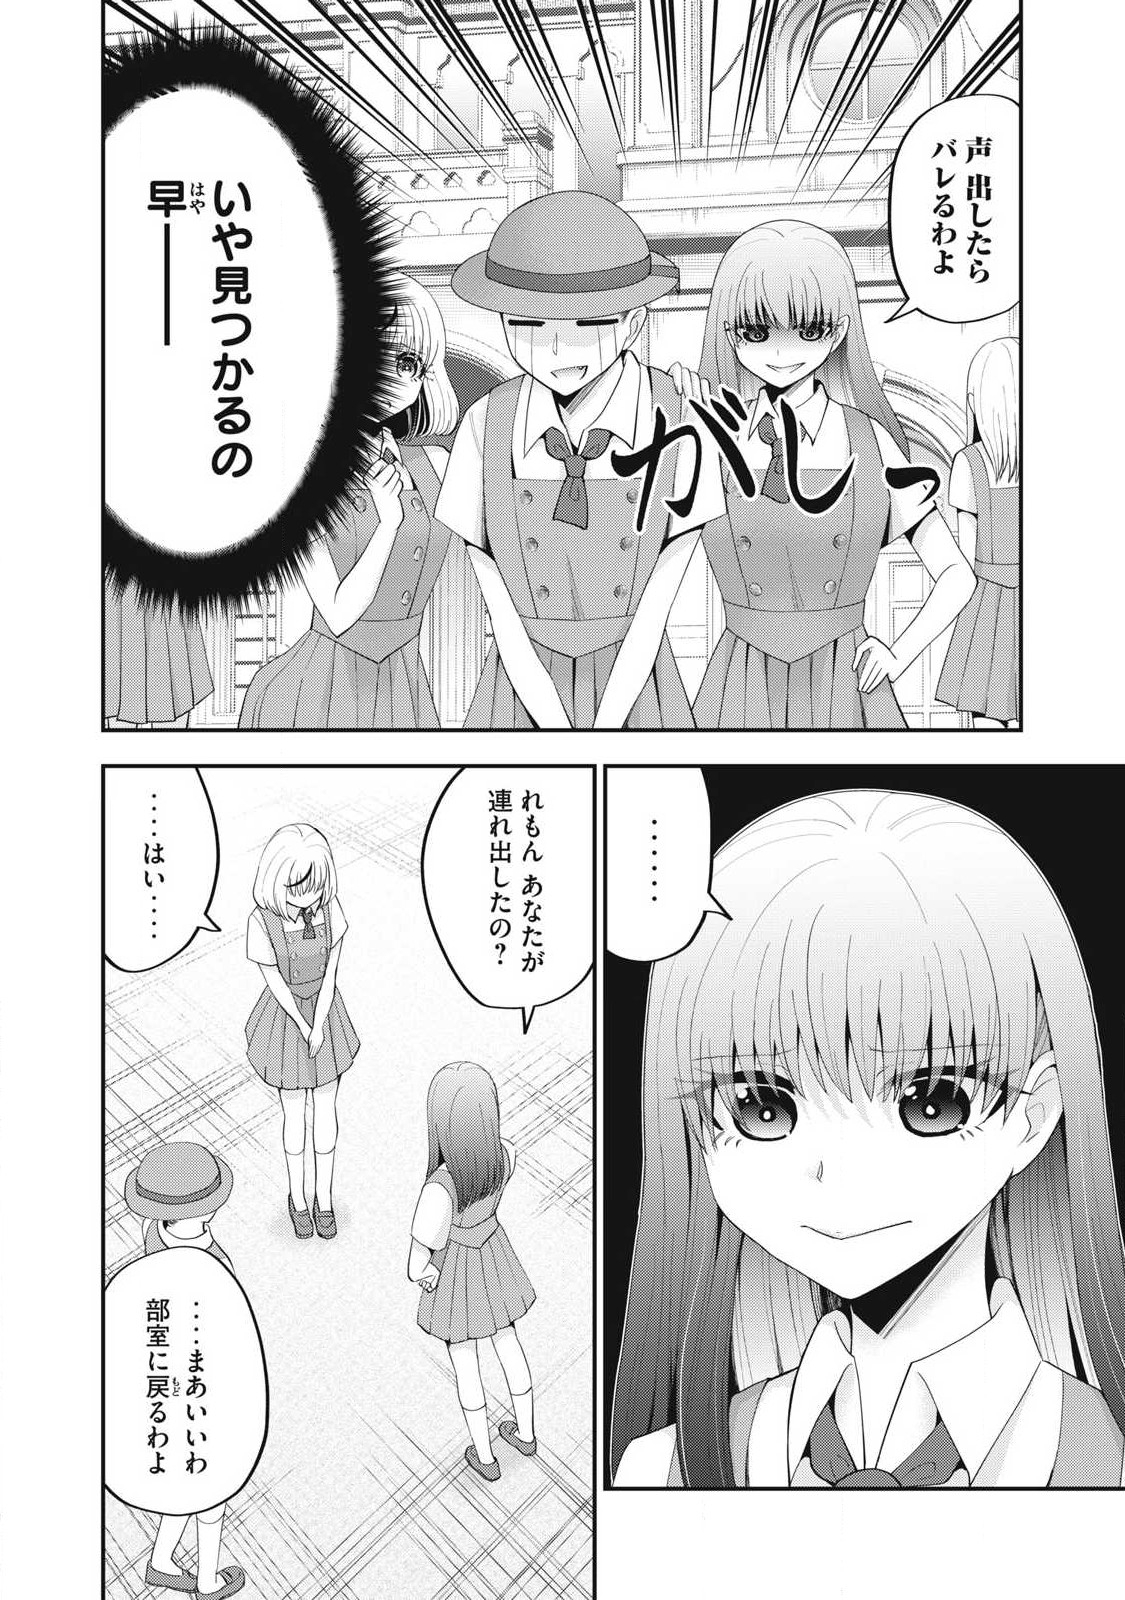 Yumeutsutsu no Hana no Sono - Chapter 13 - Page 2